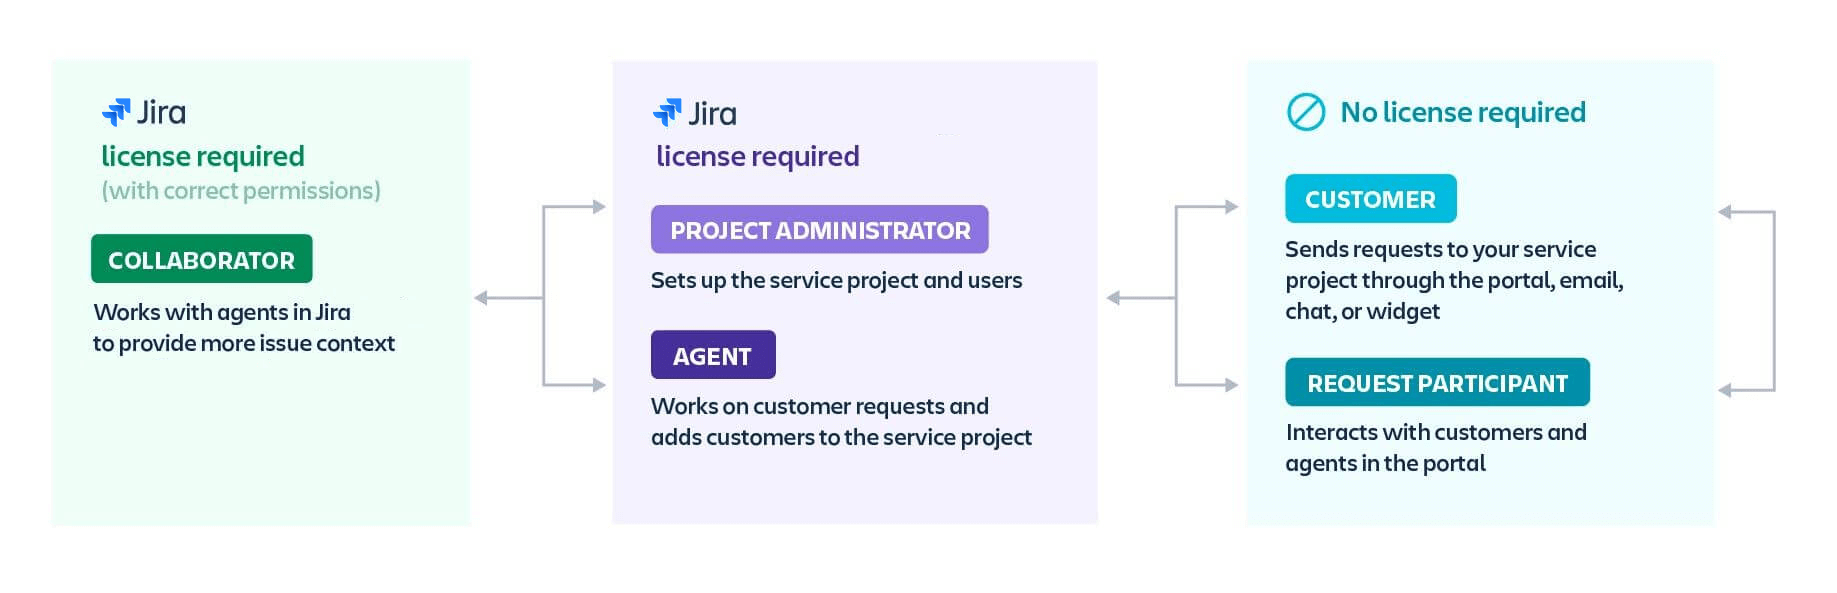 Tipos de usuarios en Jira Software y Jira Service Management: colaborador, administrador del proyecto, agente, cliente y participante de la solicitud